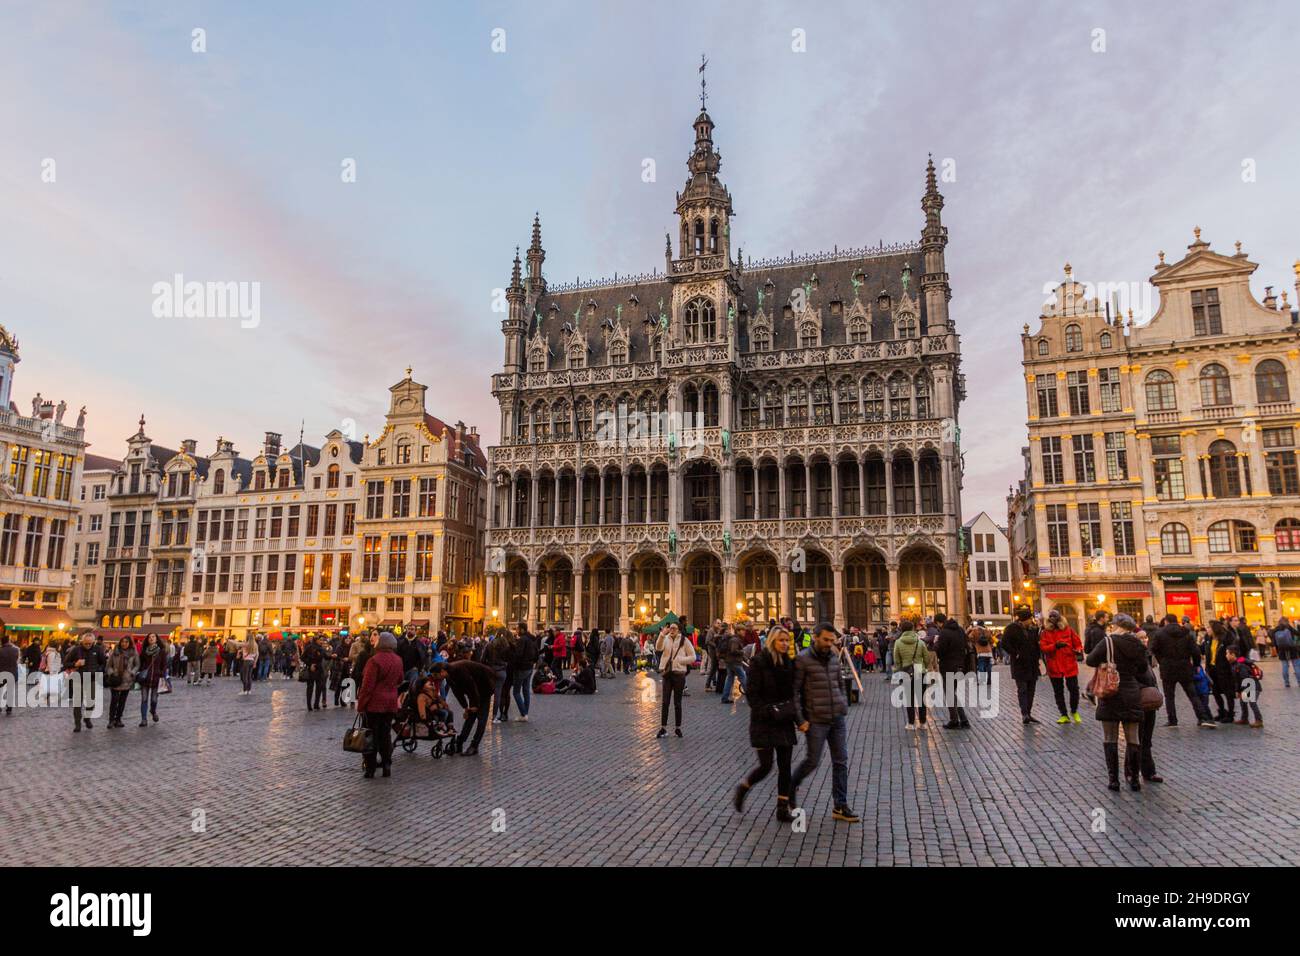 BRUXELLES, BELGIQUE - 3 NOVEMBRE 2018 : Musée de la ville de Bruxelles (bâtiment Maison du Roi/Broodhuis) à la Grand place (Grote Markt) à Bruxelles, capitale de Belg Banque D'Images